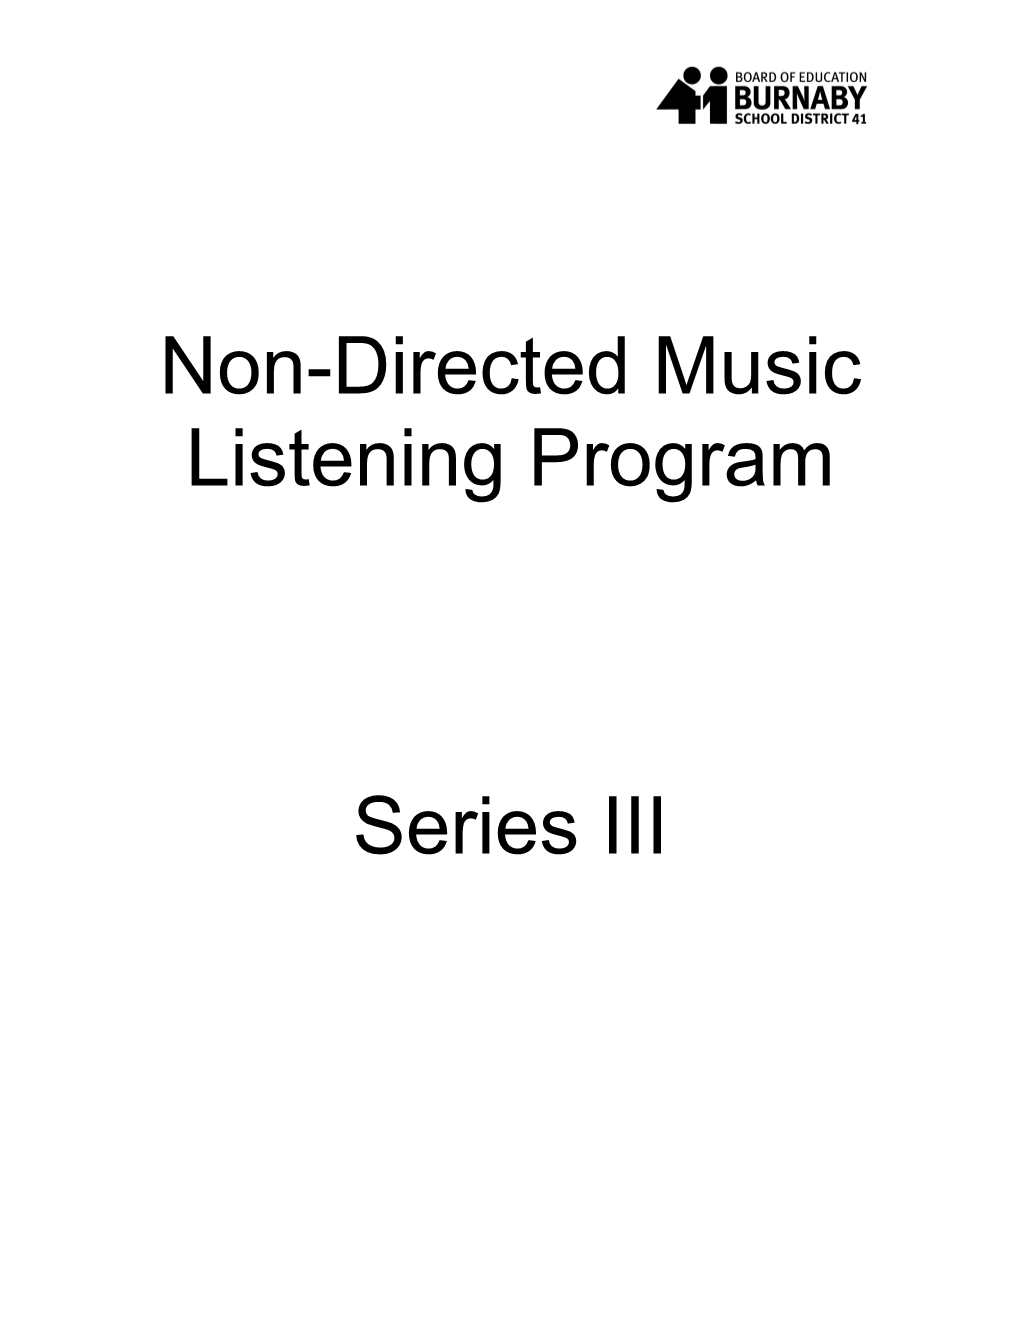 Script Listening Program 3